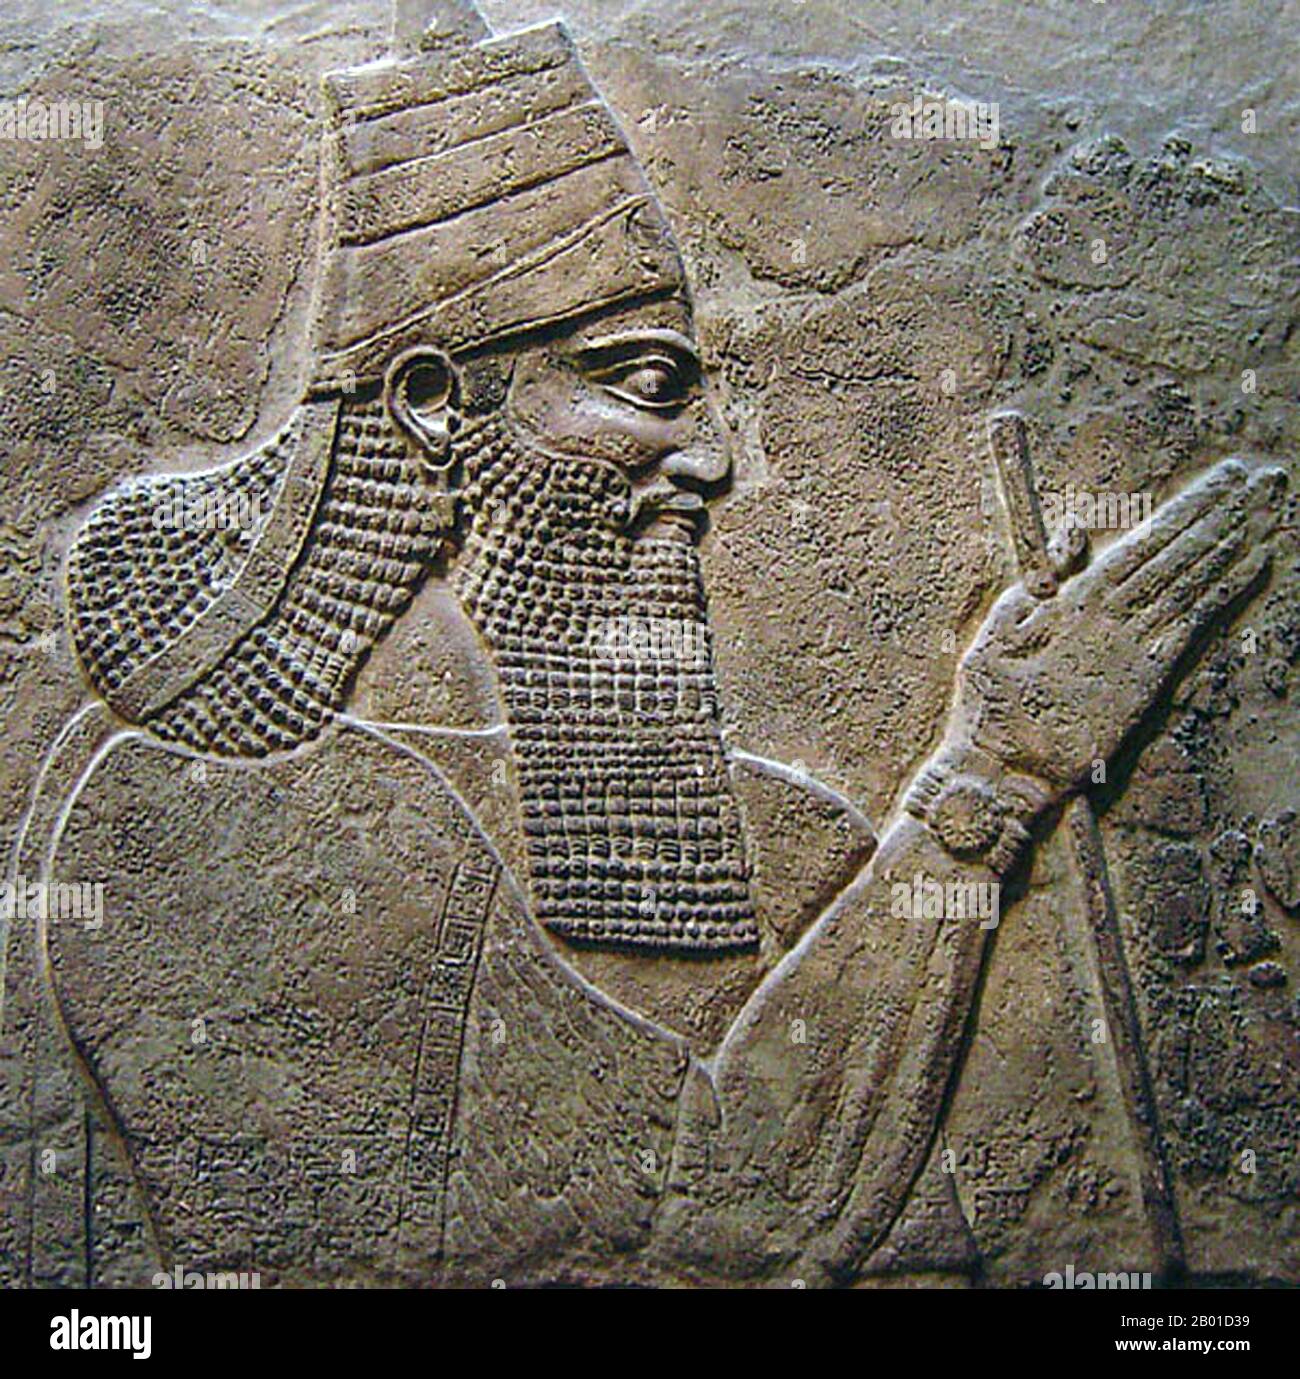 Irak: Tiglath-Pileser III, König von Assyrien (c. 795-727 BCE). Gipswand-Paneelentlastung, 728 BCE. Tiglath-Pileser III war ein prominenter König von Assyrien im achten Jahrhundert v. Chr. (r. 745-727 v. Chr.) und gilt weithin als Gründer des neo-assyrischen Reiches. Tiglath-Pileser III. Eroberte während eines Bürgerkrieges den assyrischen Thron und tötete die königliche Familie. Er nahm weitreichende Änderungen an der assyrischen Regierung vor und verbesserte ihre Effizienz und Sicherheit erheblich. Assyrische Kräfte wurden zu einer stehenden Armee. Er gilt als einer der erfolgreichsten Militärkommandanten der Weltgeschichte. Stockfoto